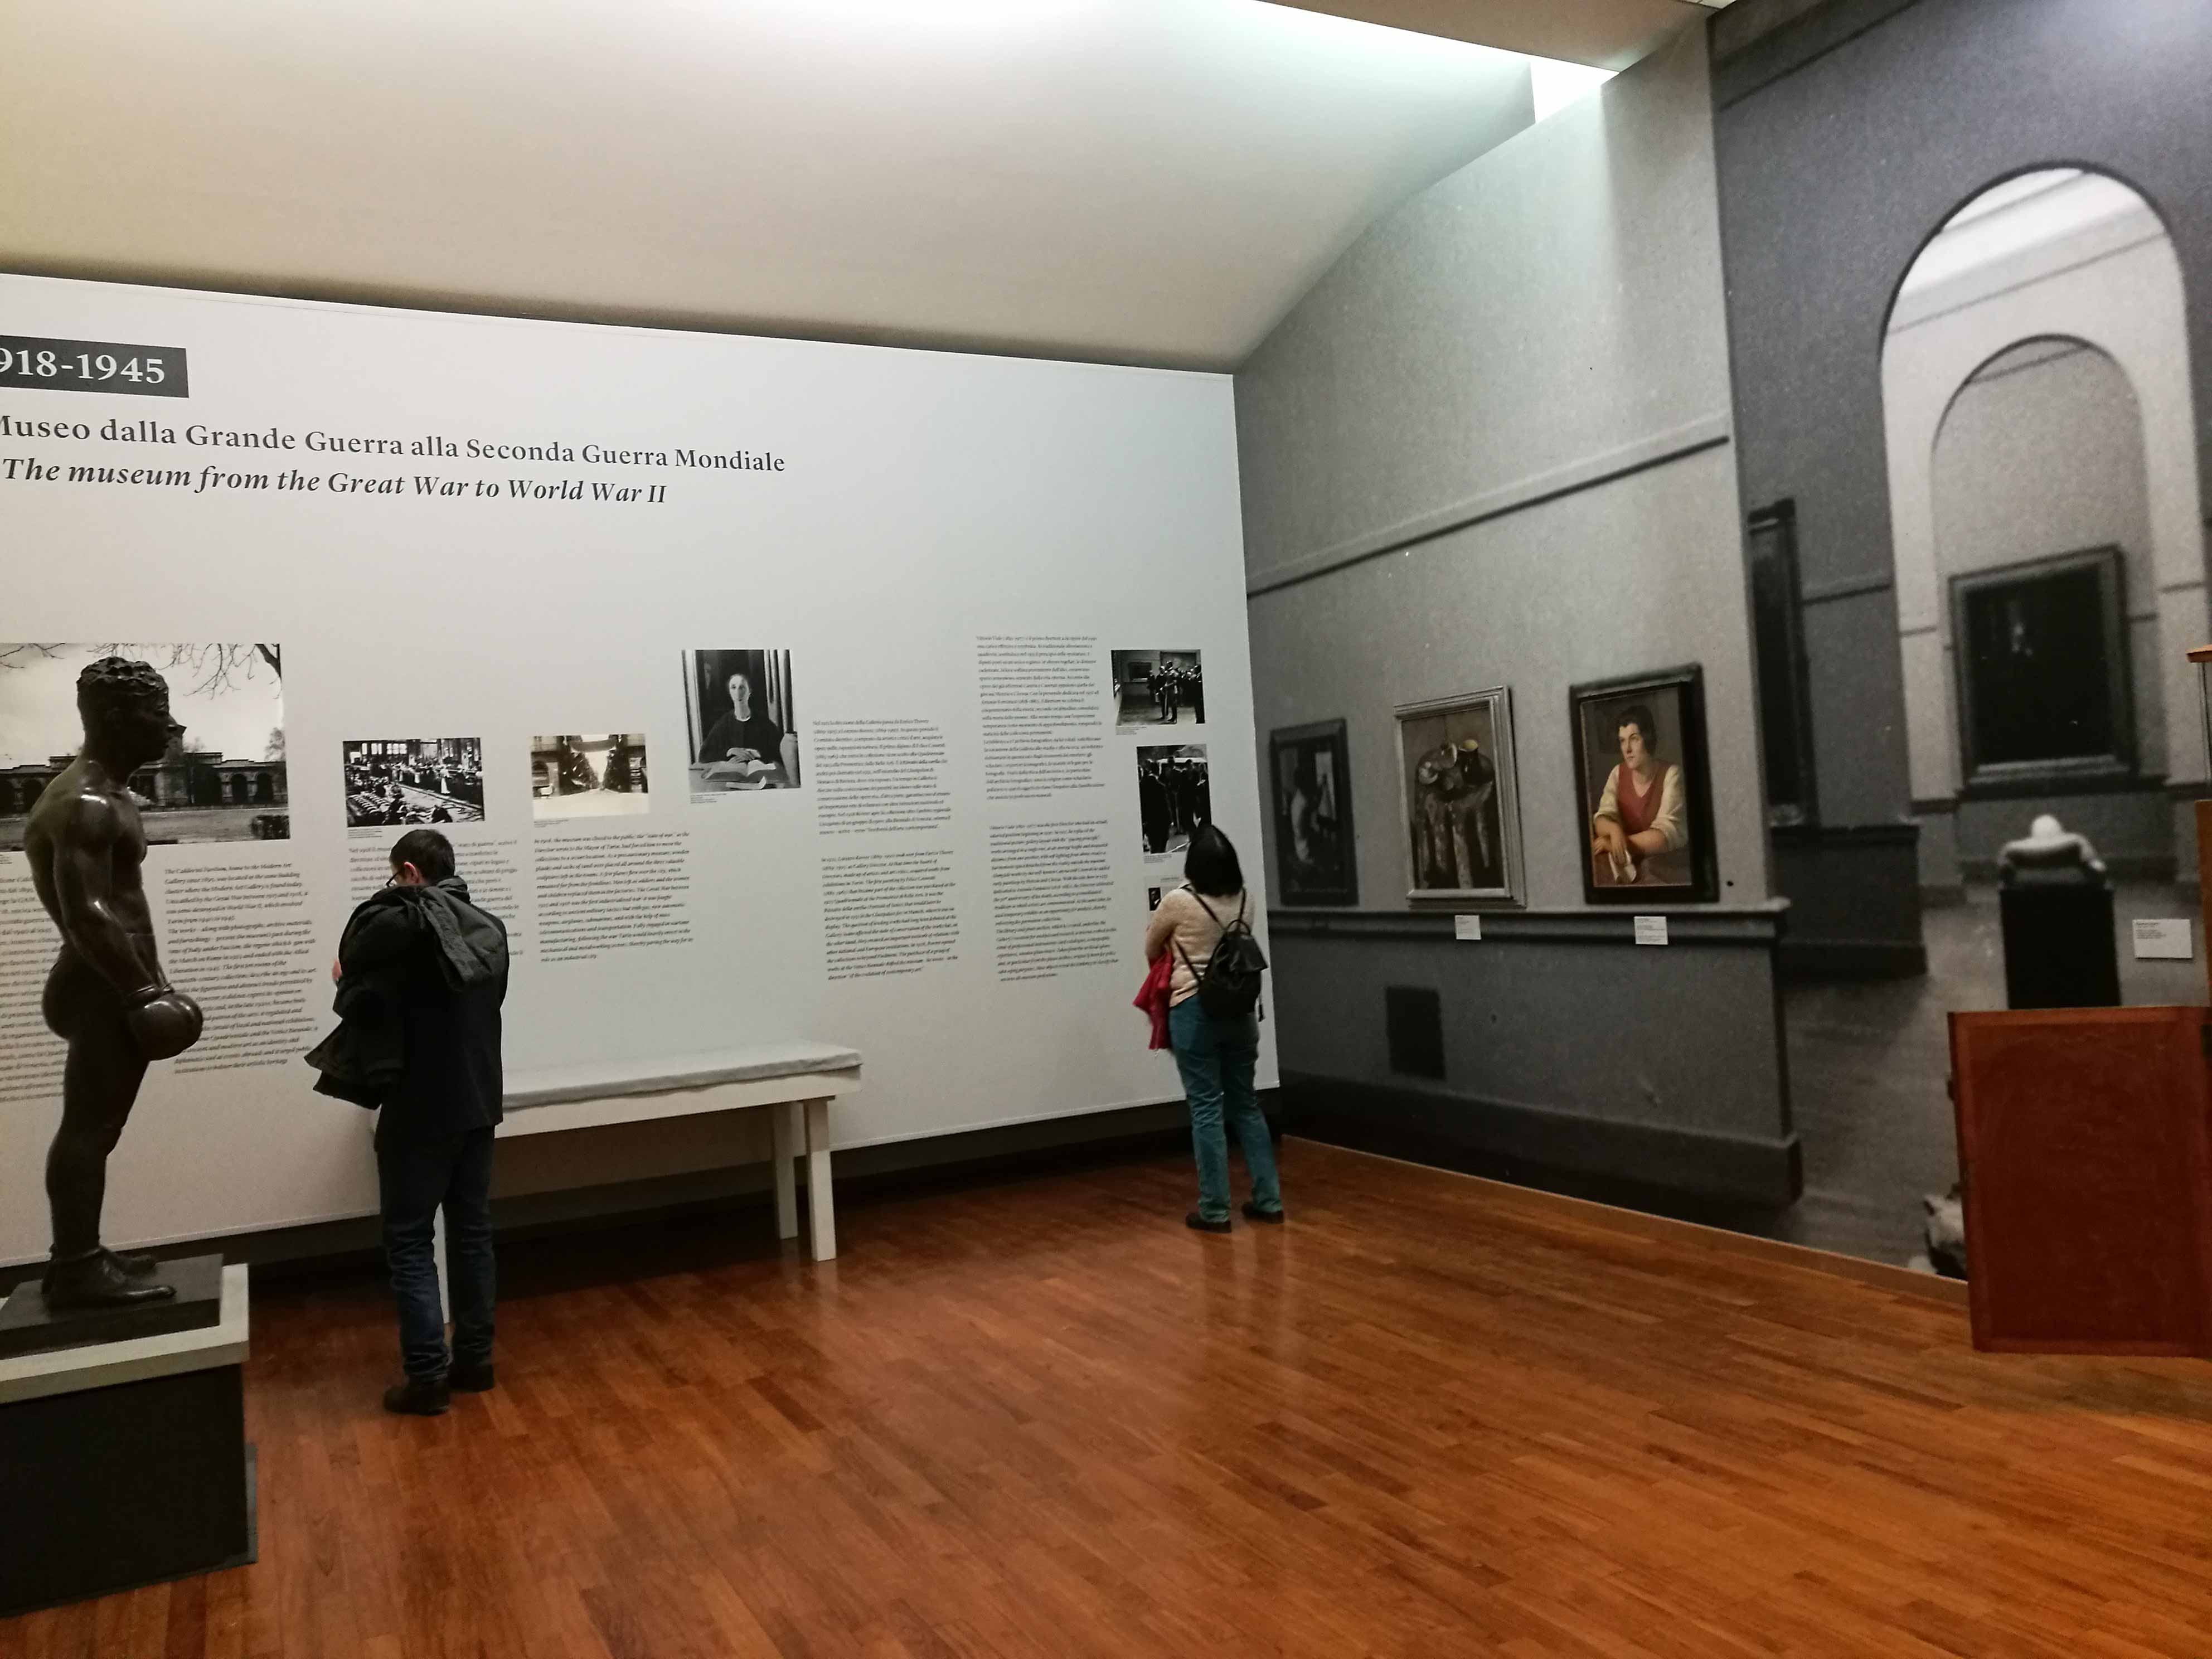 Decorazione con adesivi intagliati e quadricromie delle sale della galleria d'arte moderna e contemporanea a Torino.